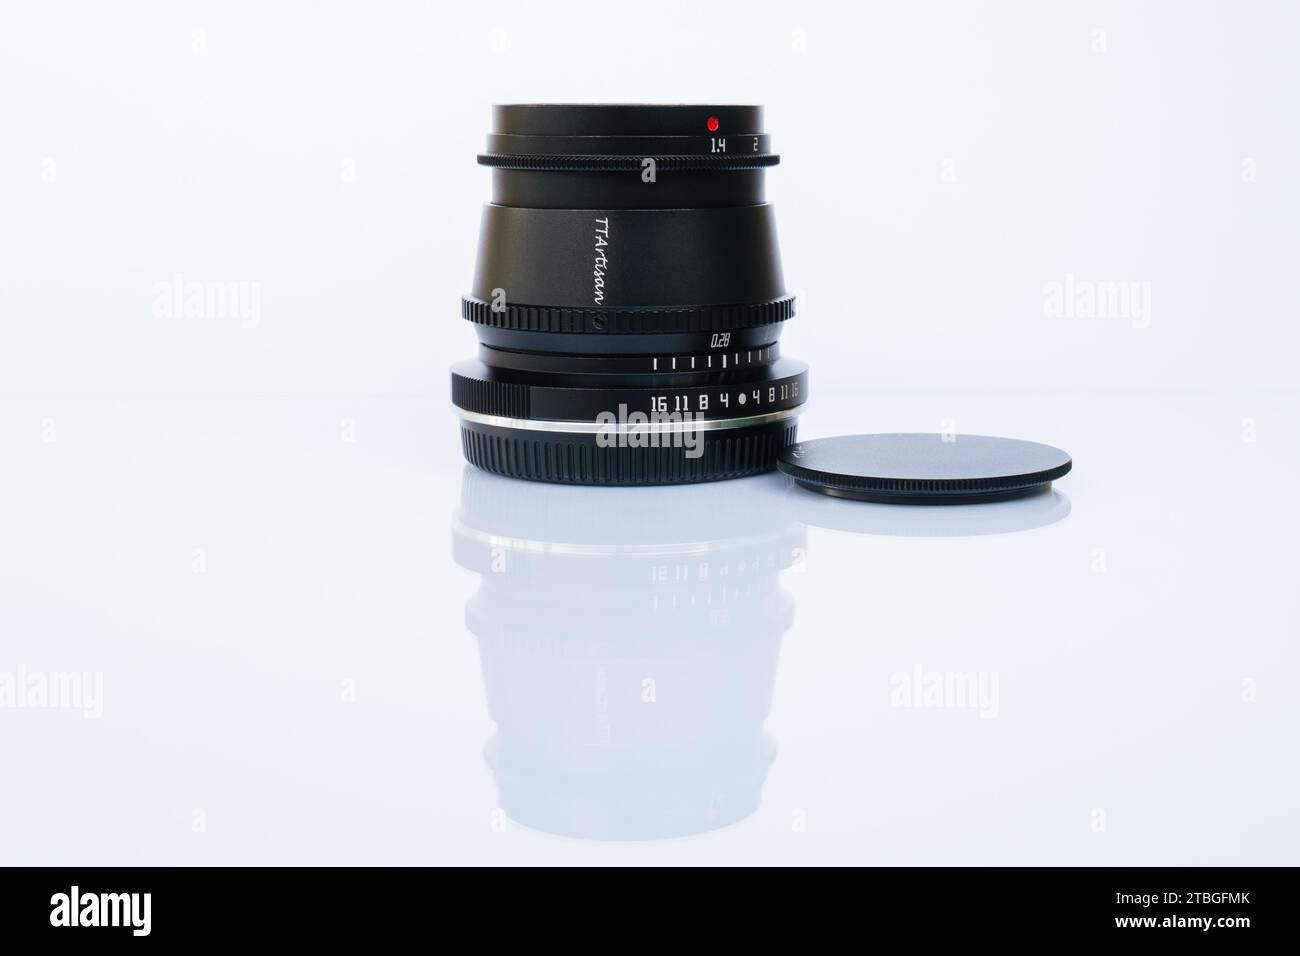 Objectif à mise au point manuelle TT Artisan avec une distance focale de 35 mm et une ouverture maximale de 1,4 sur fond blanc droit avec réflexion Banque D'Images